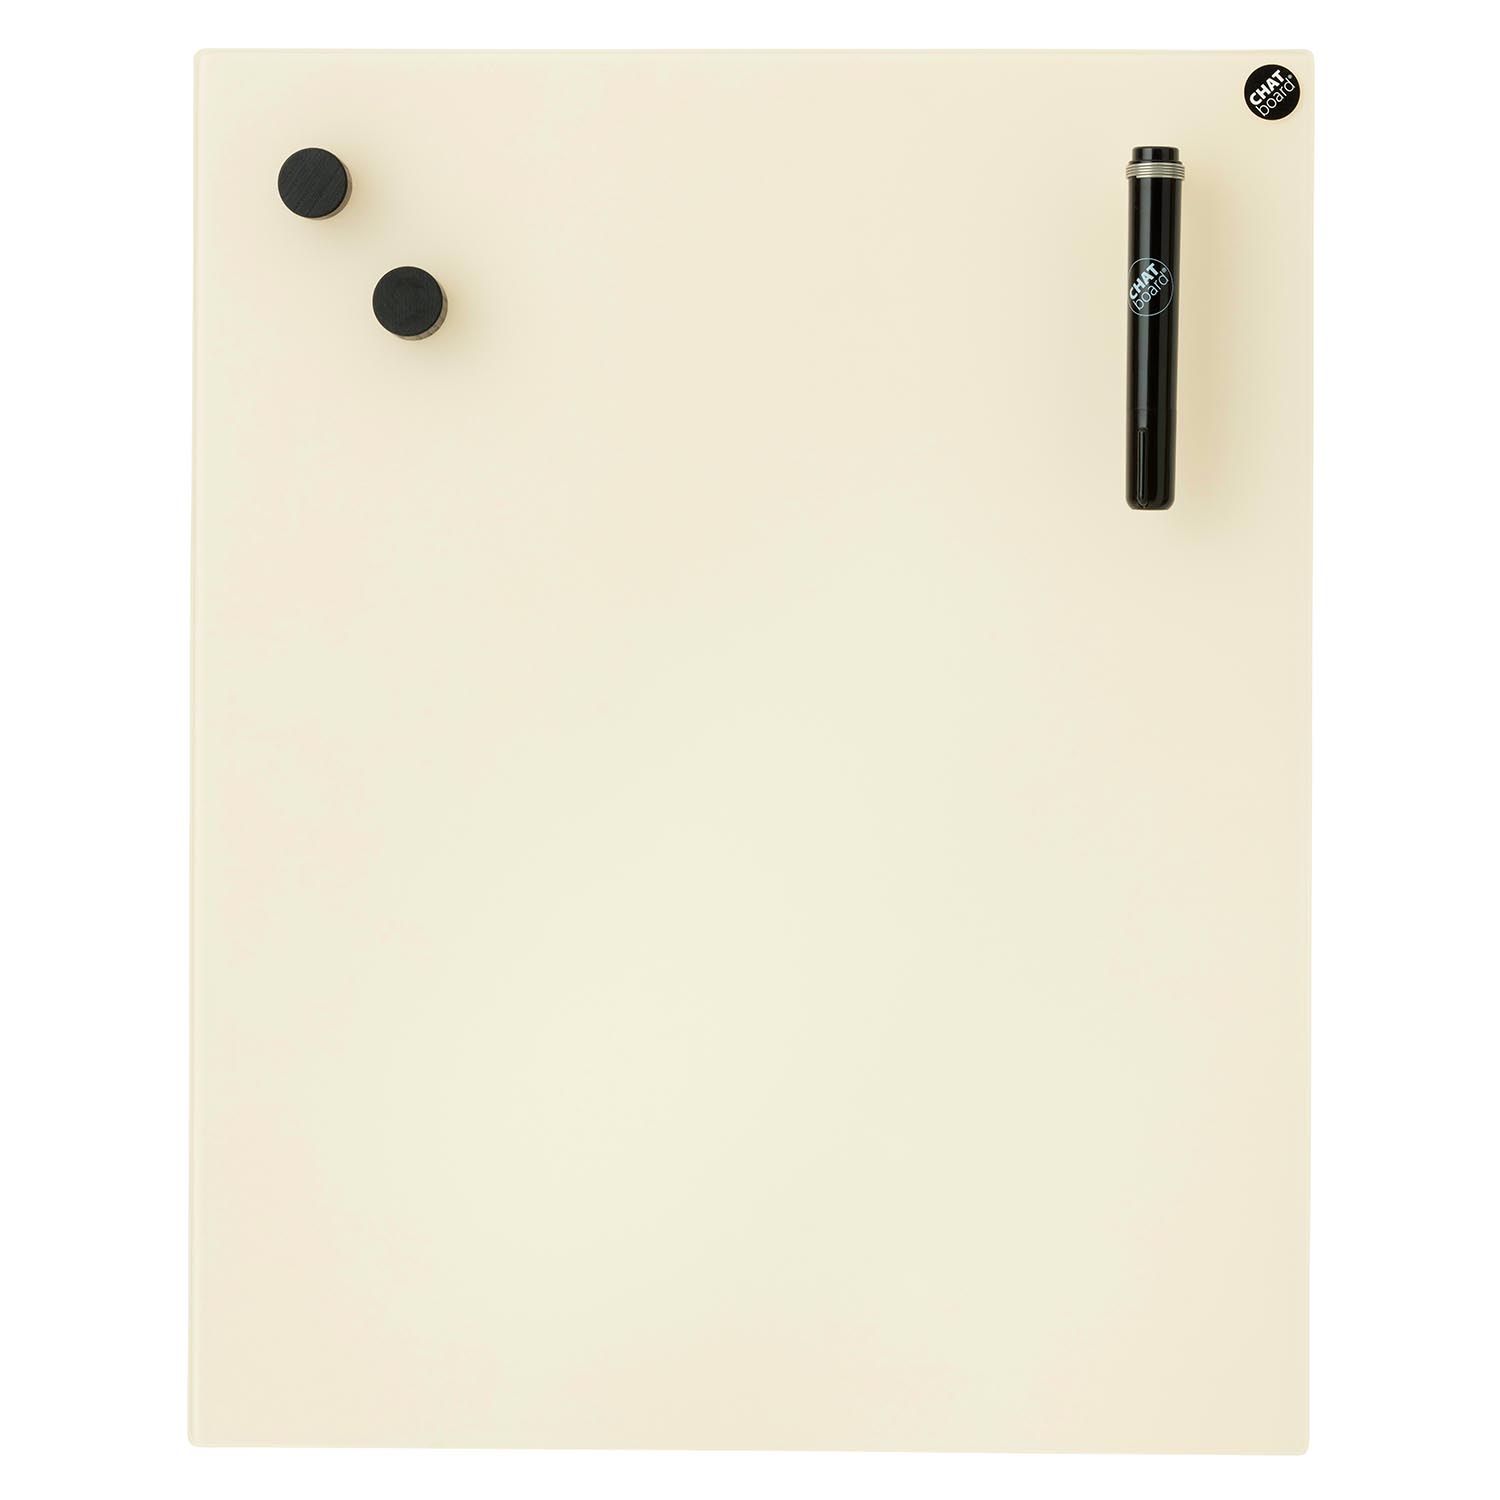 Classic Schreibtafel, Grösse 90 x 70 cm, Ausrichtung horizontal, Glas sky blue 39 mtsb von Chat Board